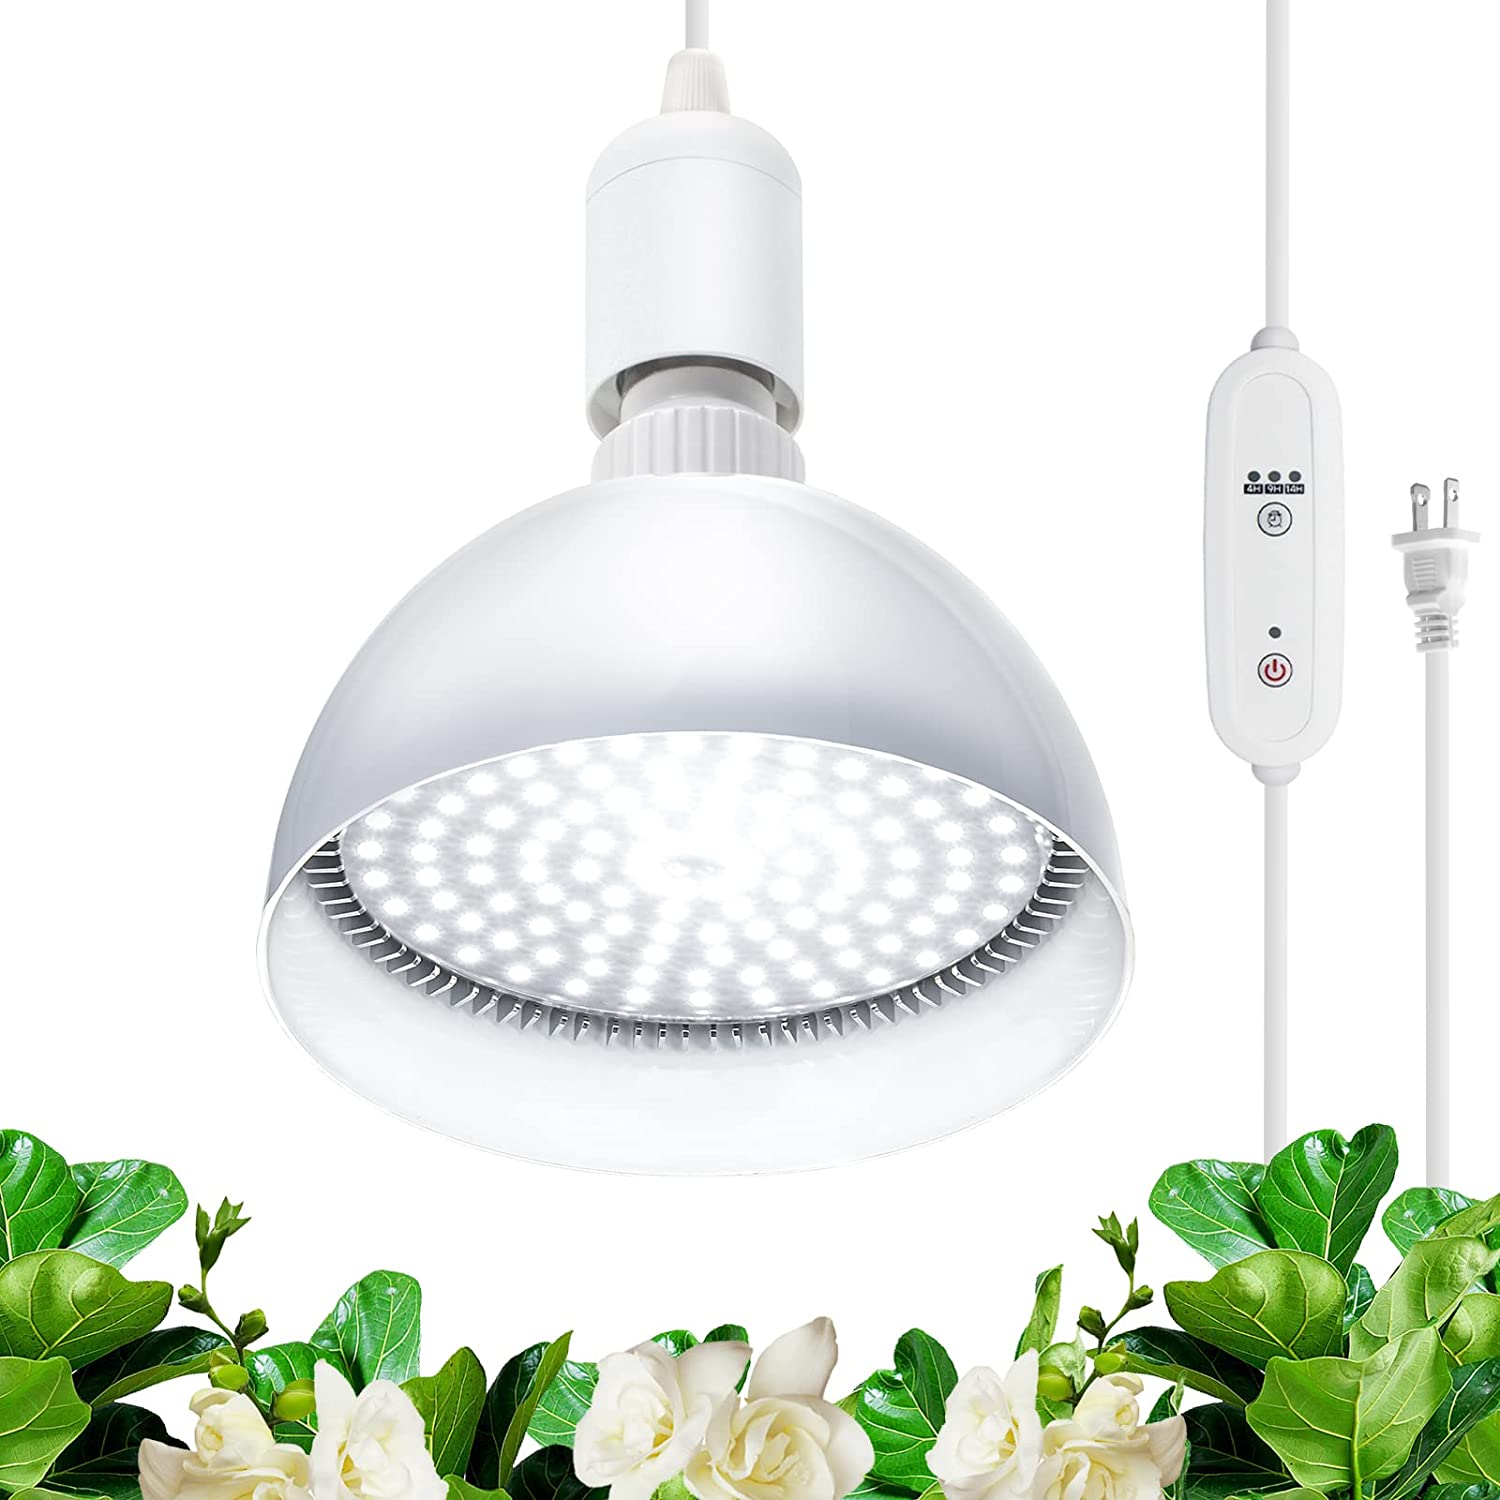 Hanging LED Grow Light Bulb,4FT,25W,5000K,Full Spectrum,1 Pack,TB25(5) - Barrina led